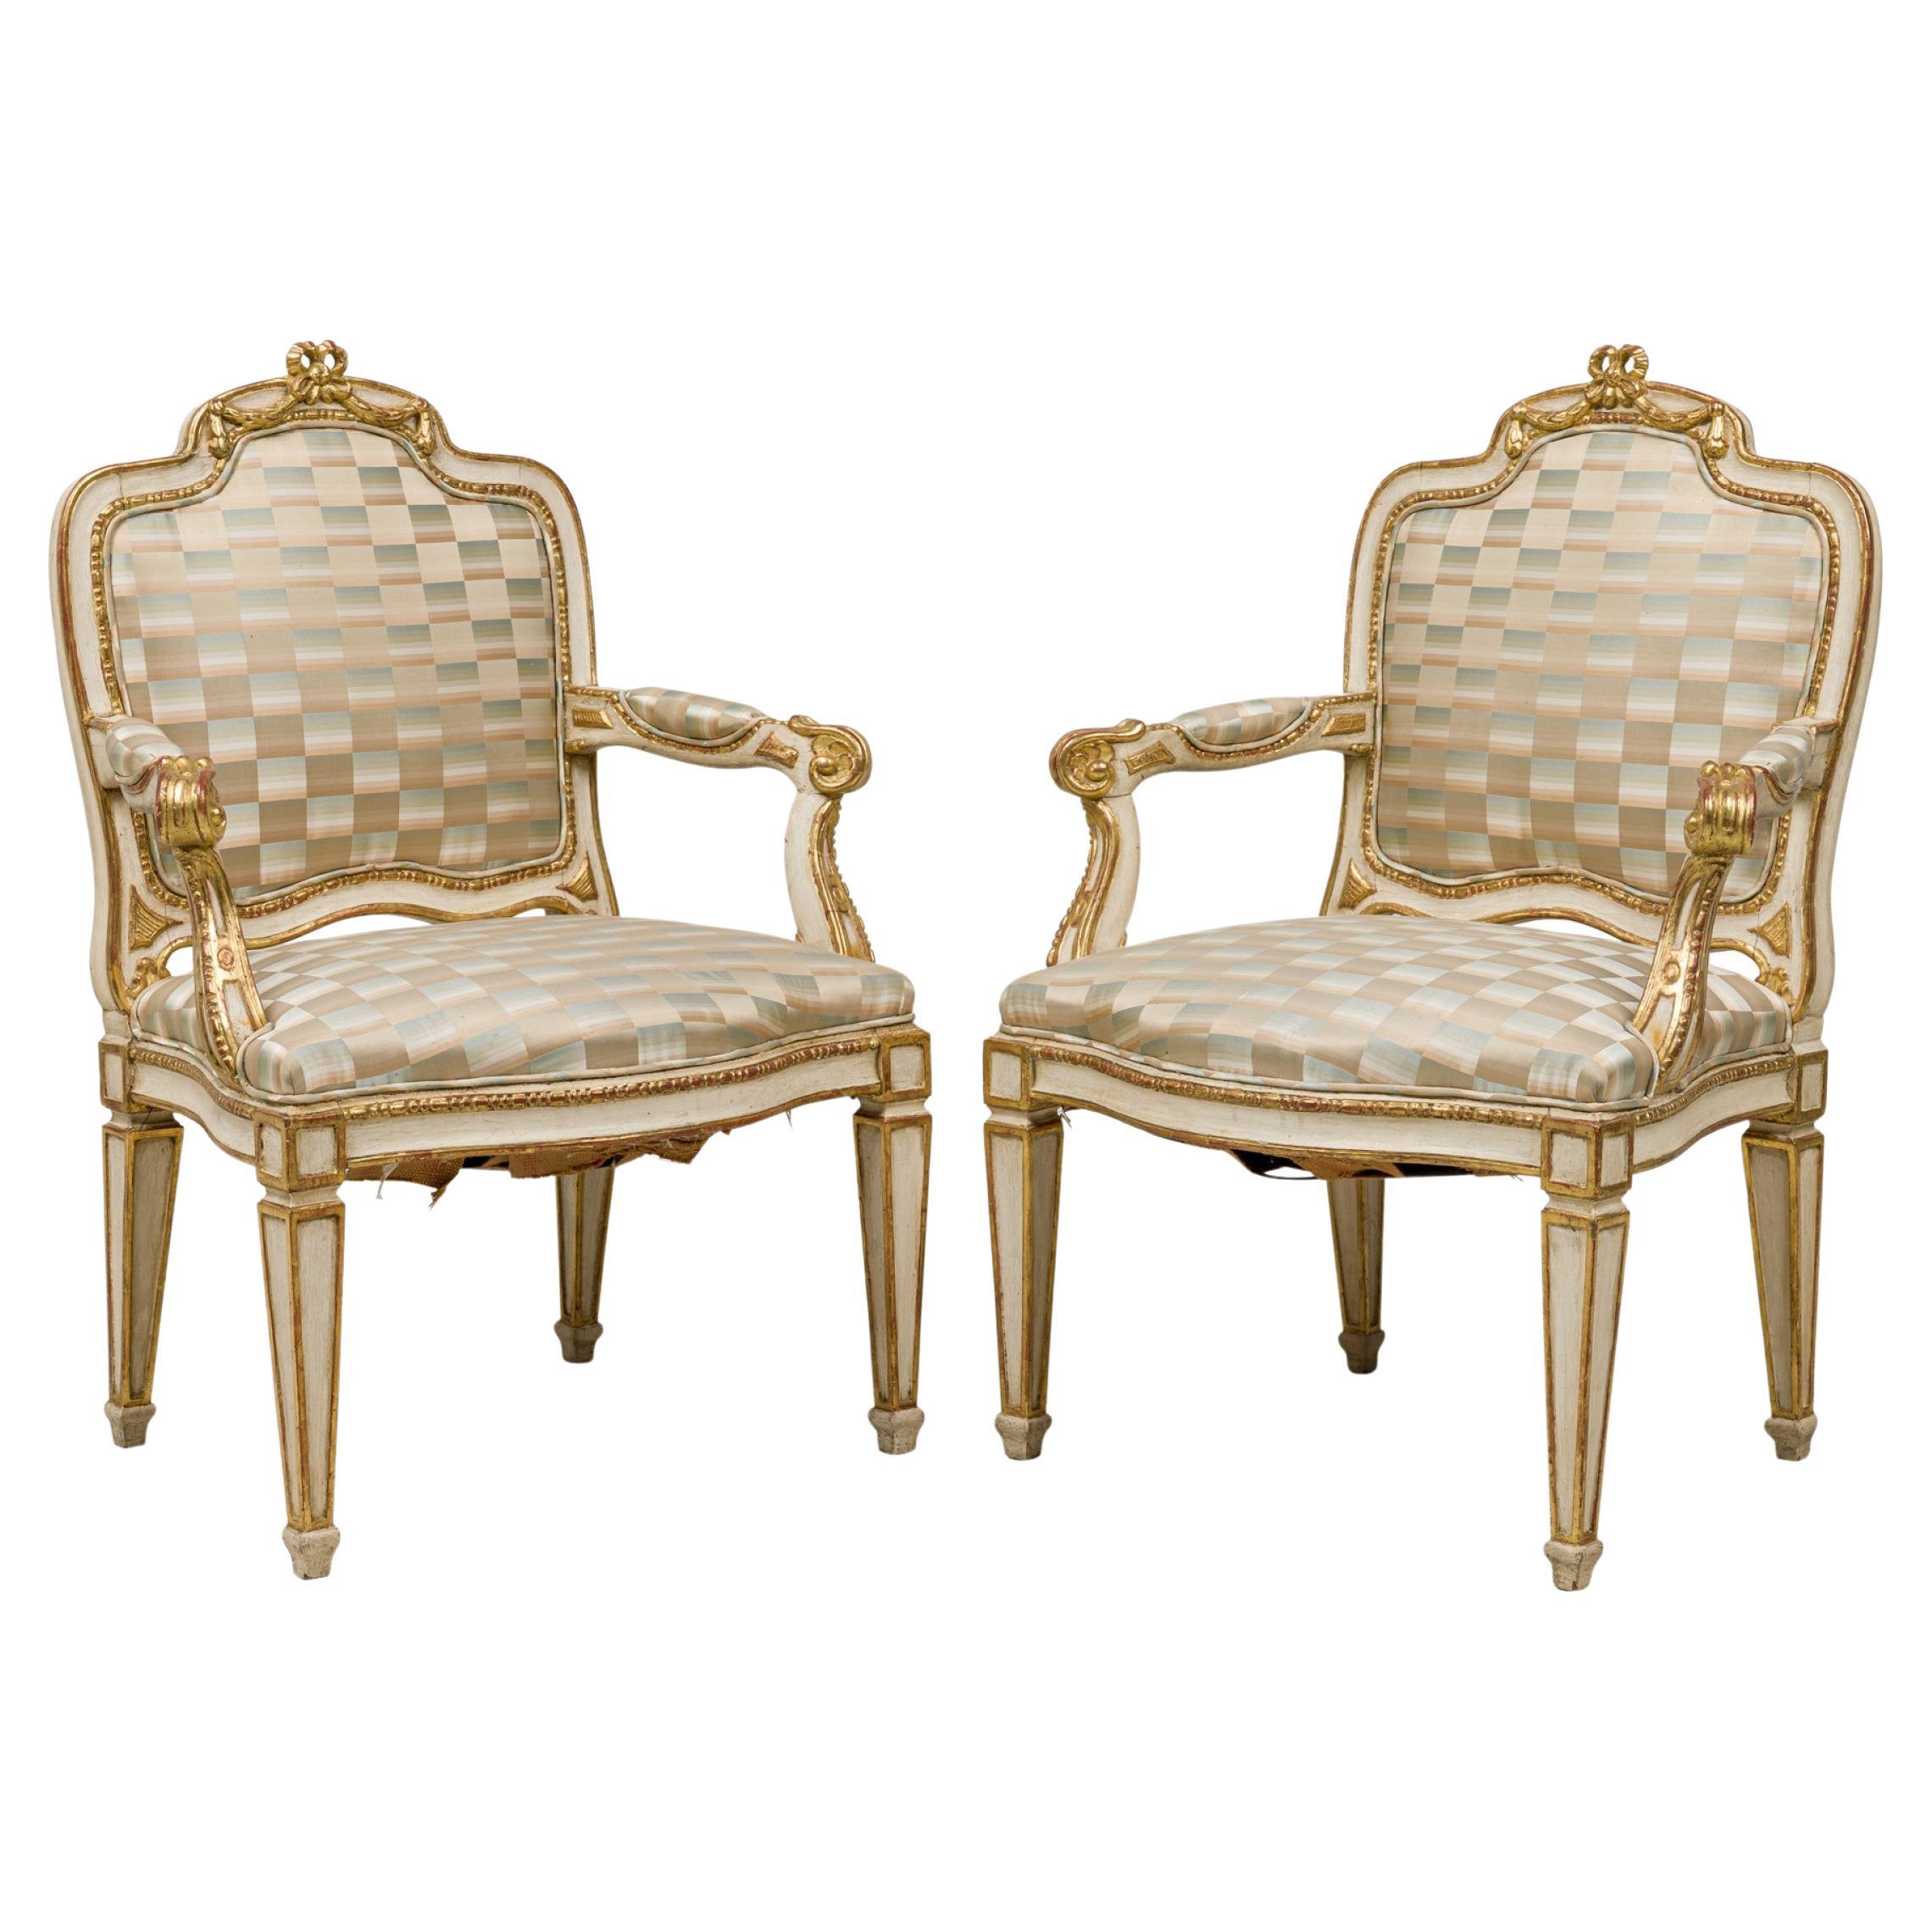 Paire de fauteuils suédois néo-classiques peints en crème et dorés à la feuille